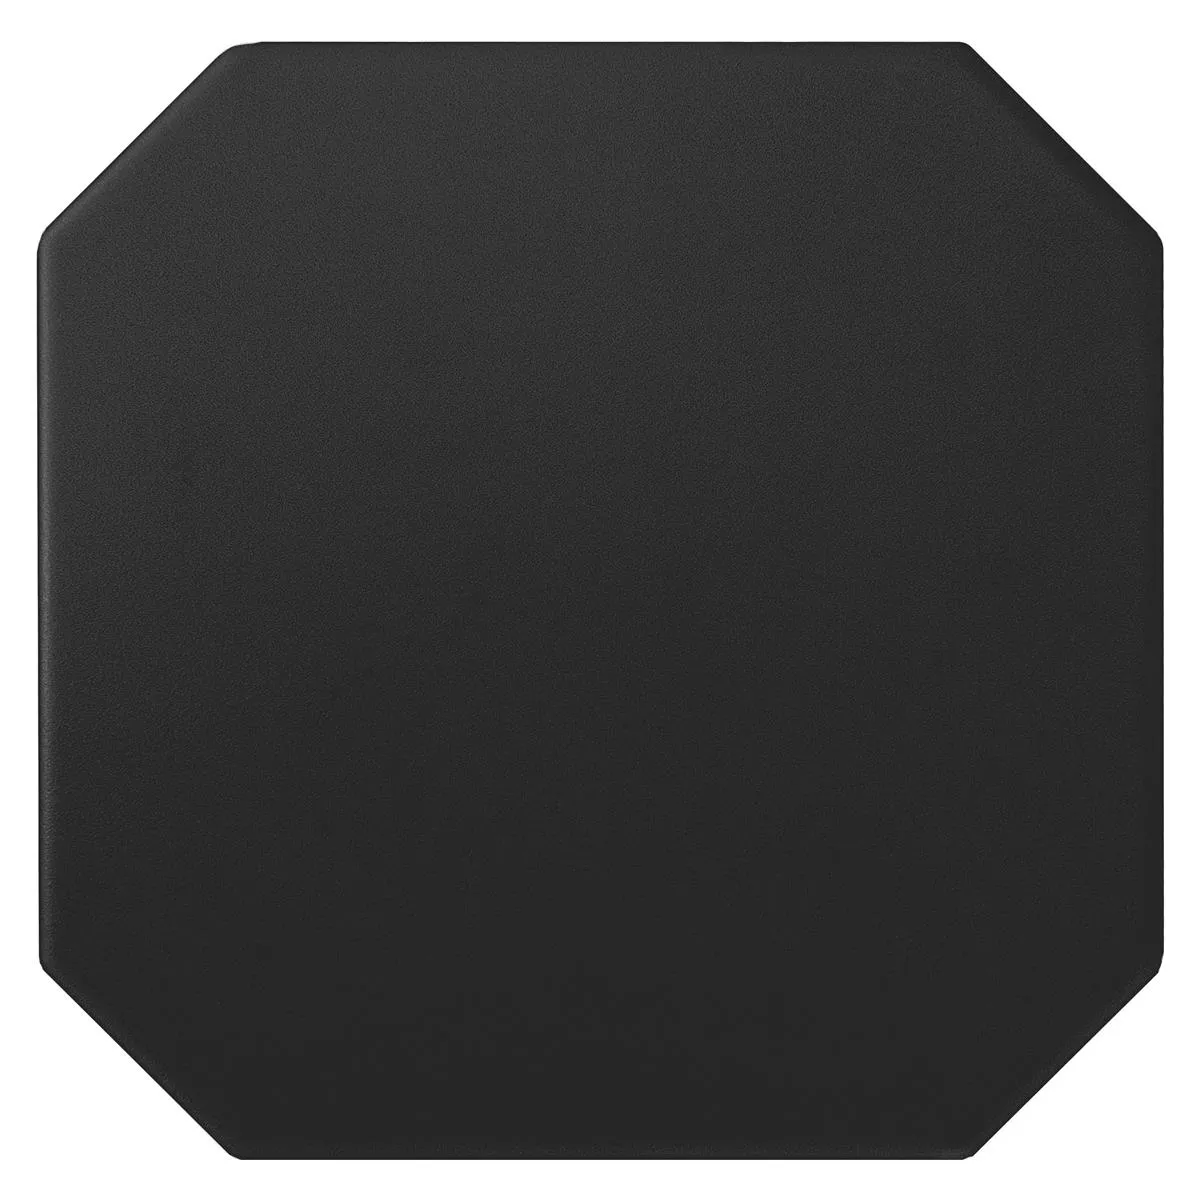 Posliinikivitavarat Laatat Genexia Uni Musta Kahdeksankulmio 20x20cm